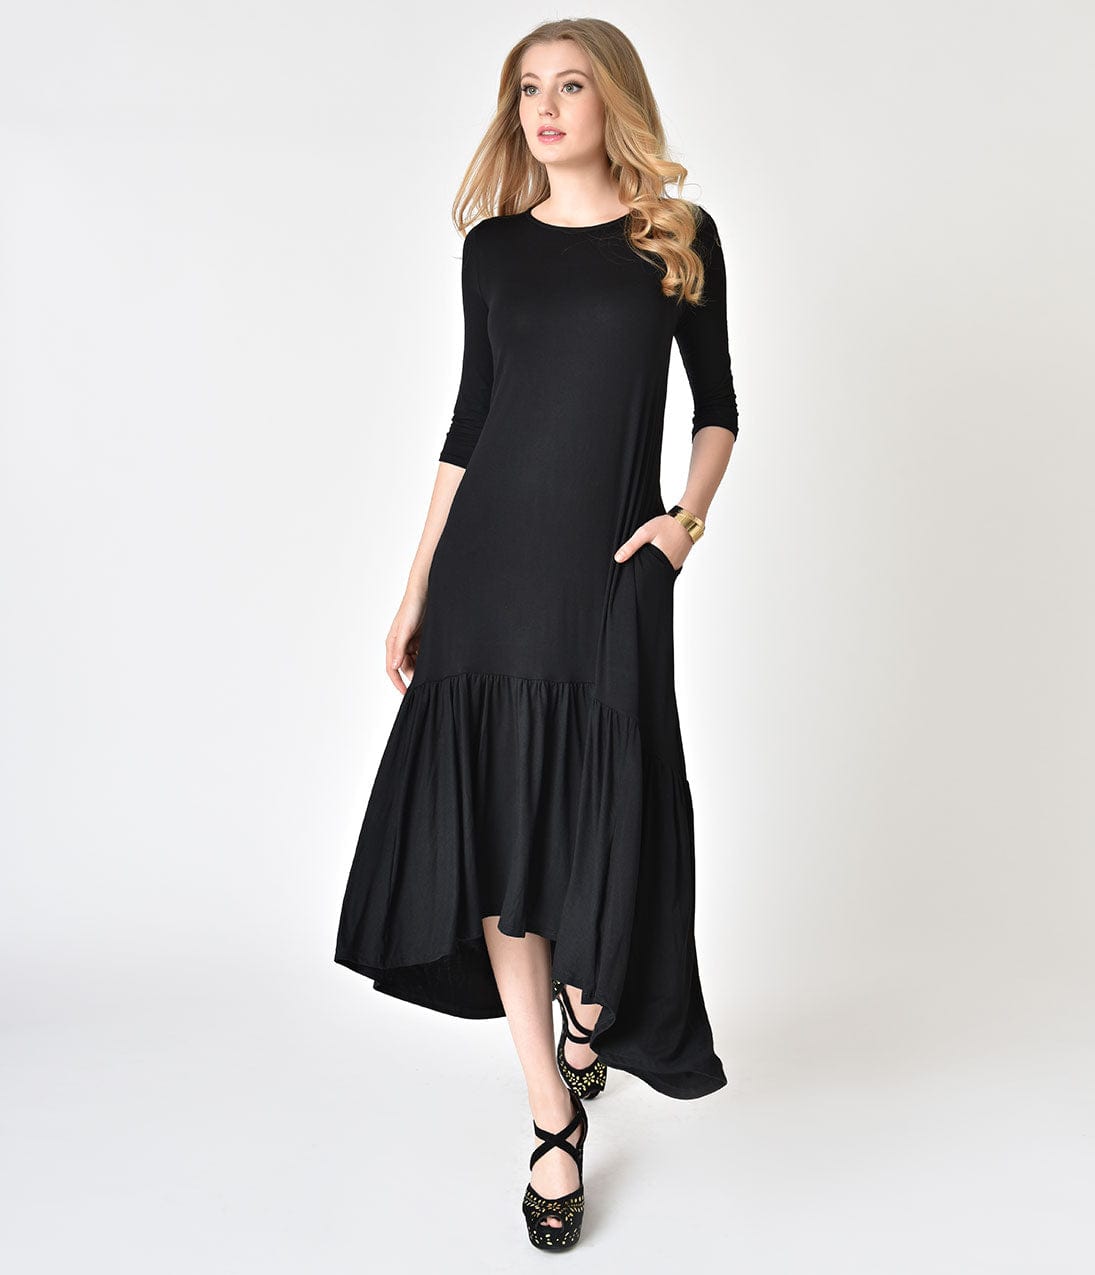 Modest, Mature, Mrs. Vintage Dresses - 20s, 30s, 40s, 50s, 60s